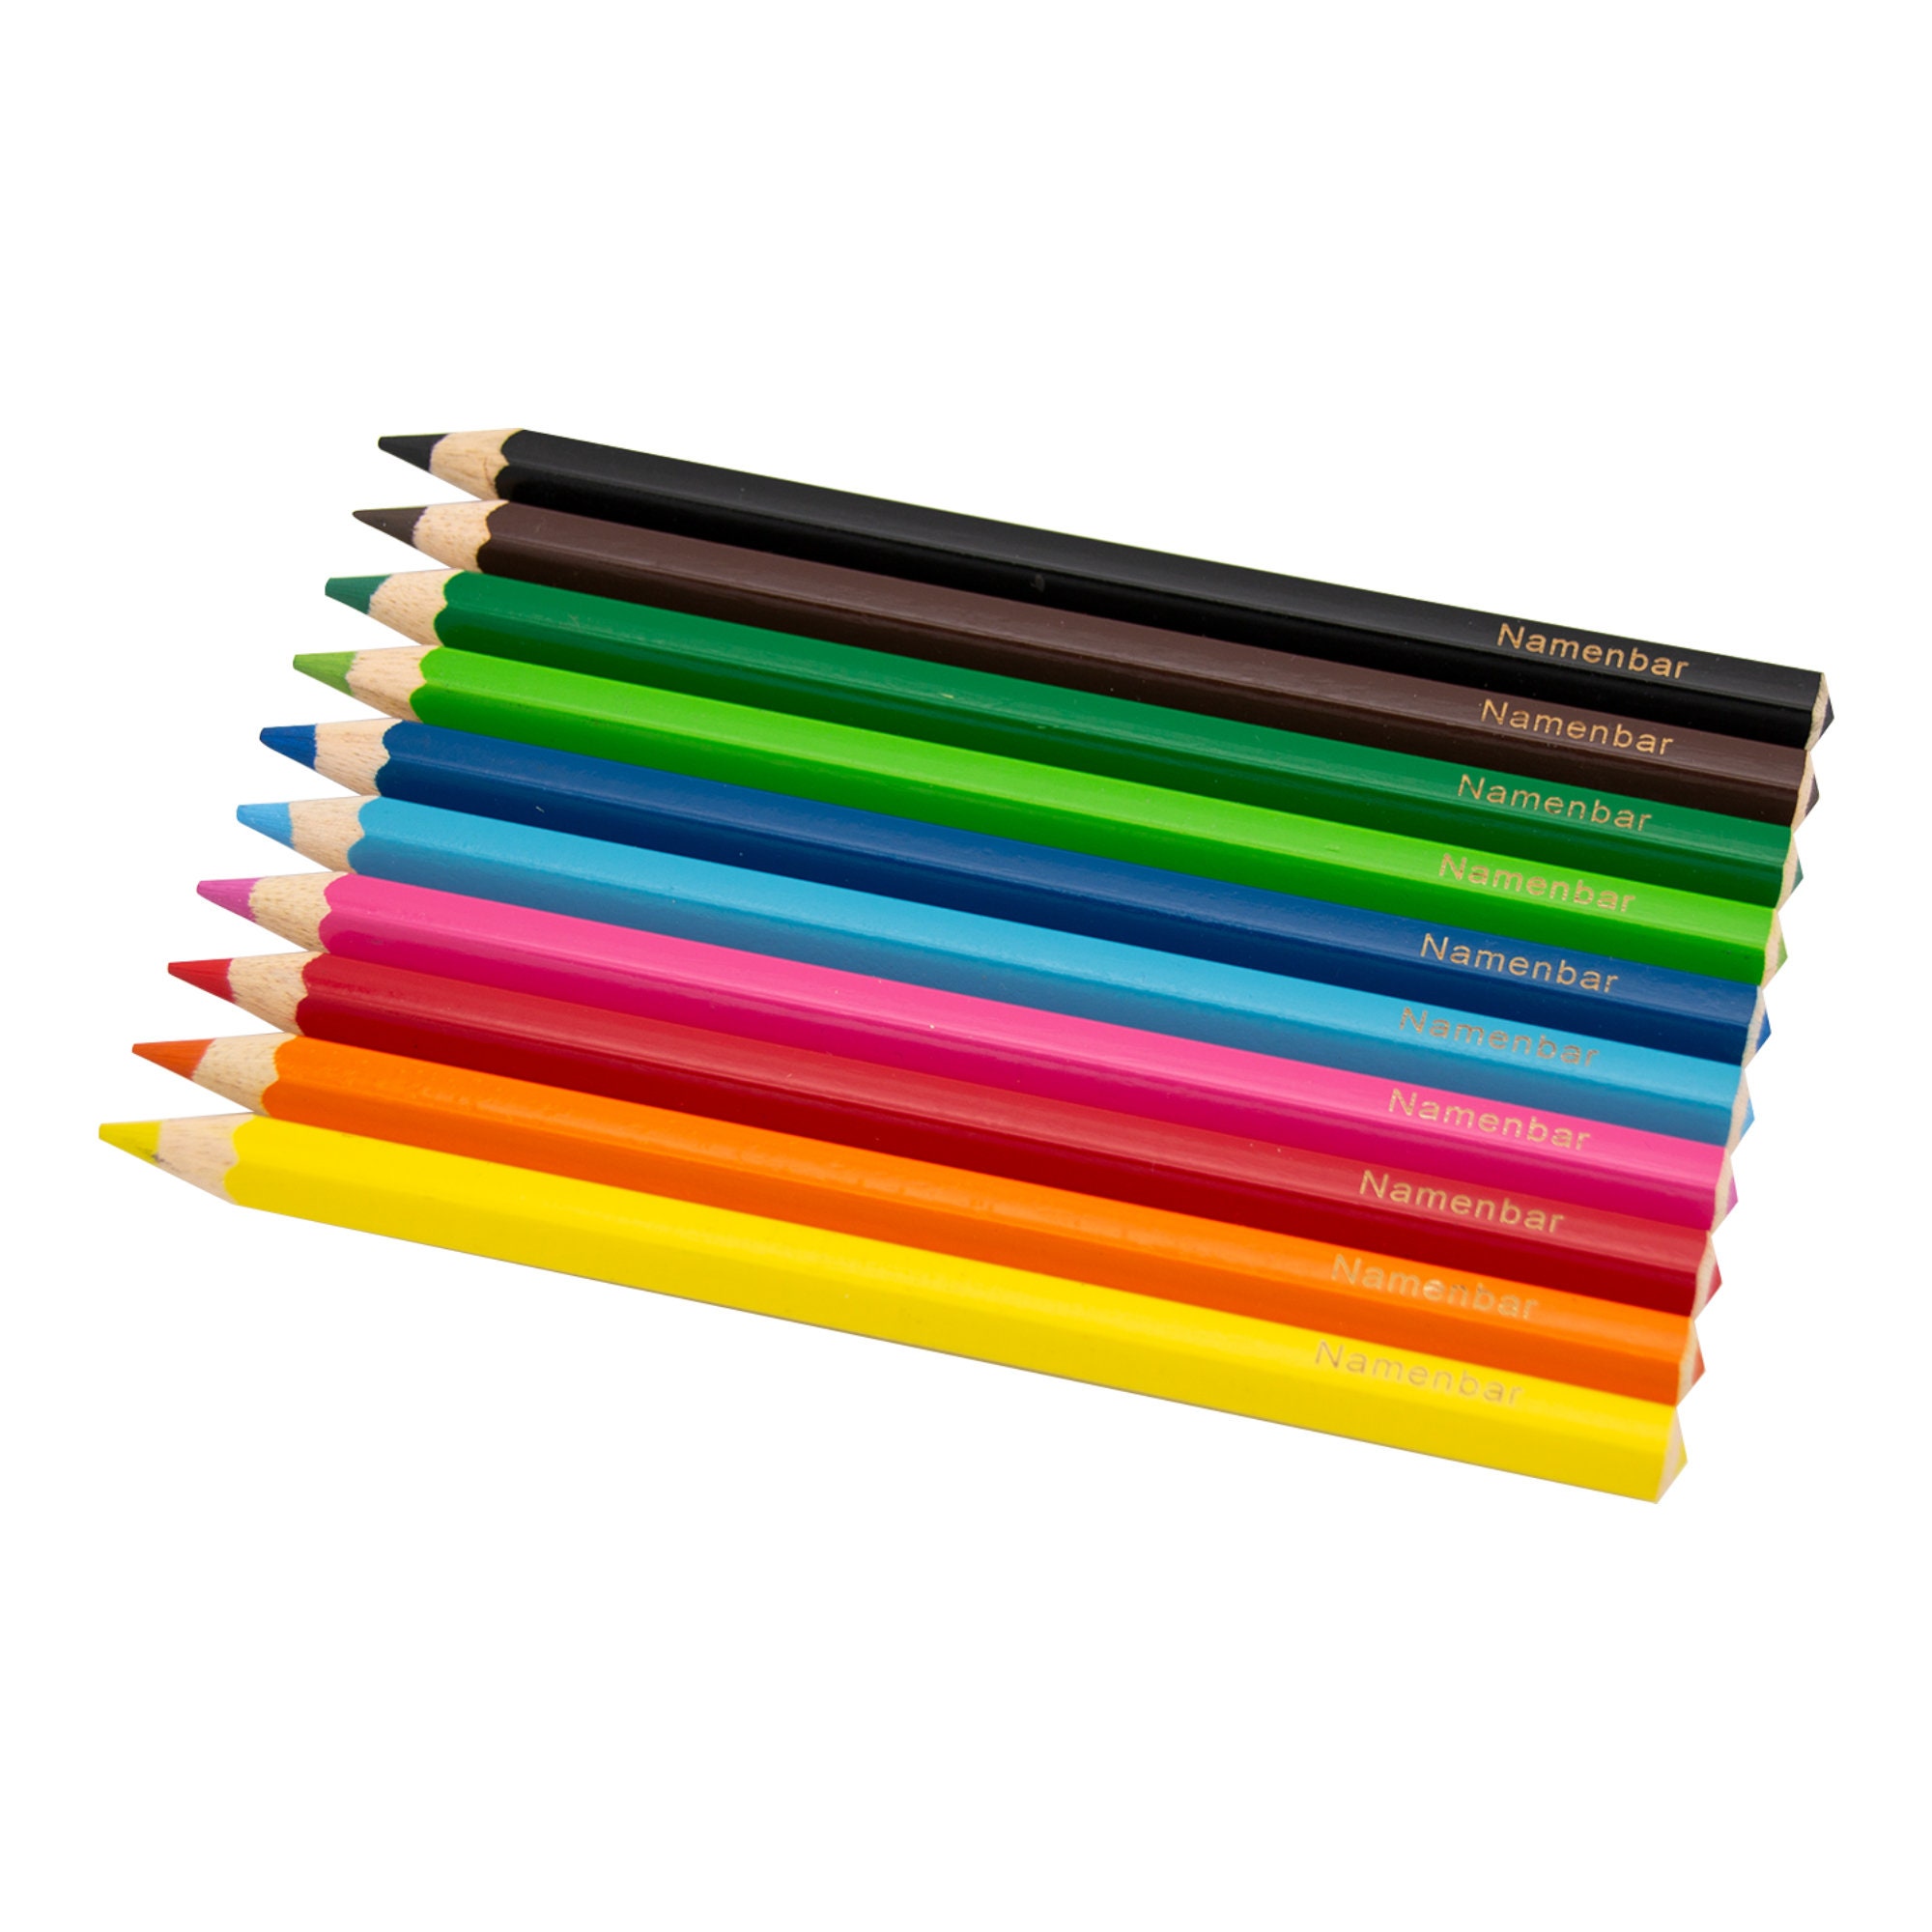 BIC Crayons de couleur Kids Jumbo (+2 ans) Lot de 12